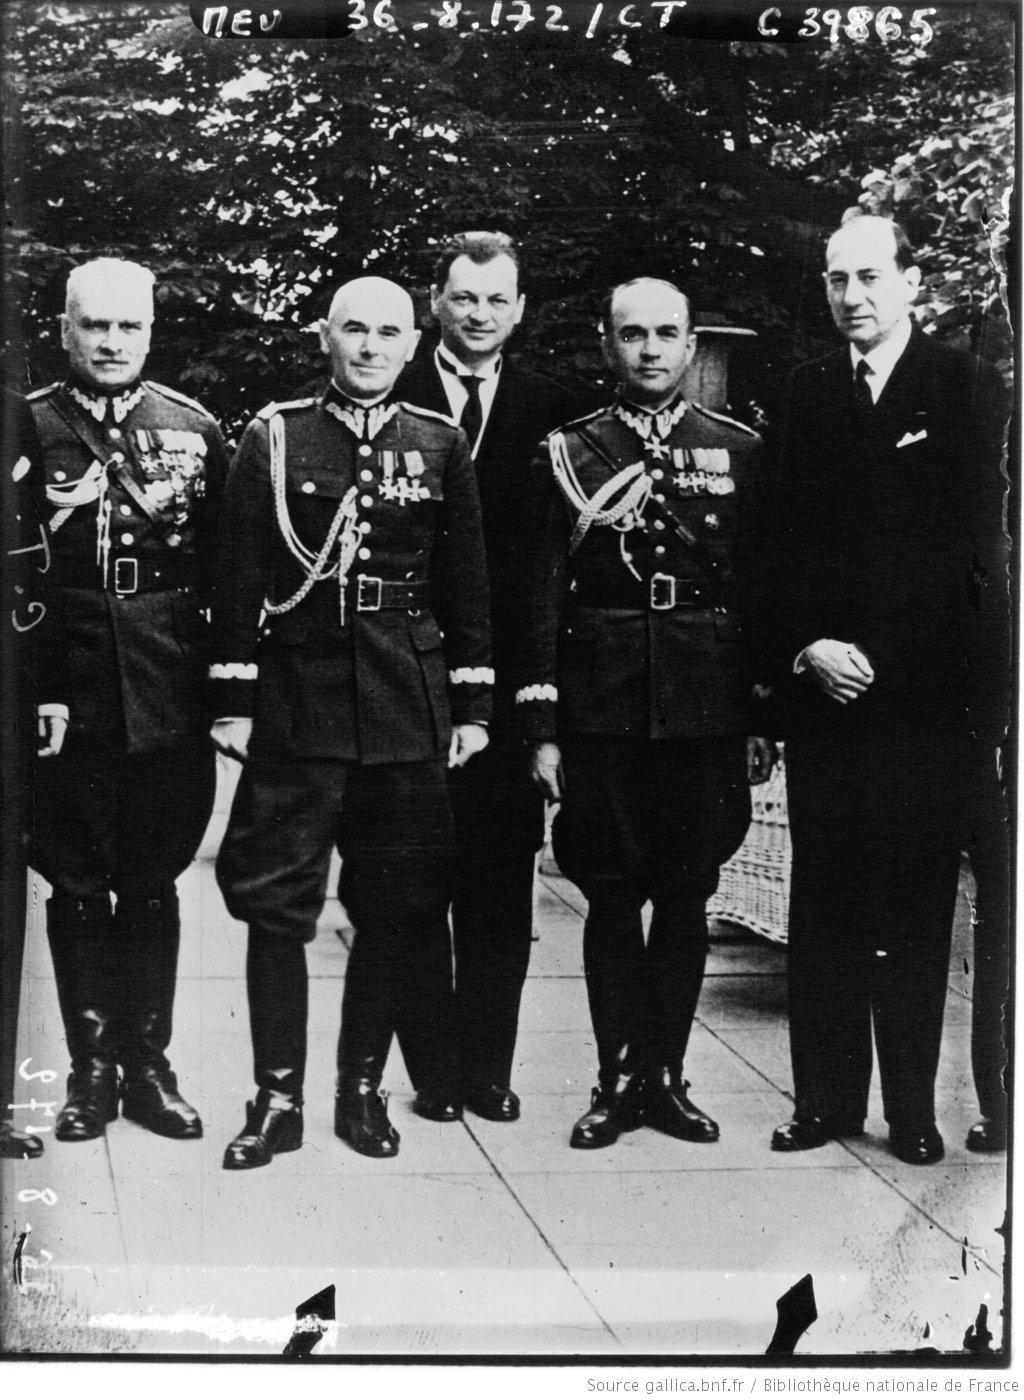 Polska - e prsident du conseil, Rydz Smigly  M. Grabovski, minis... la guerre et Deek, ministre des Affaires trangres 1936.jpg